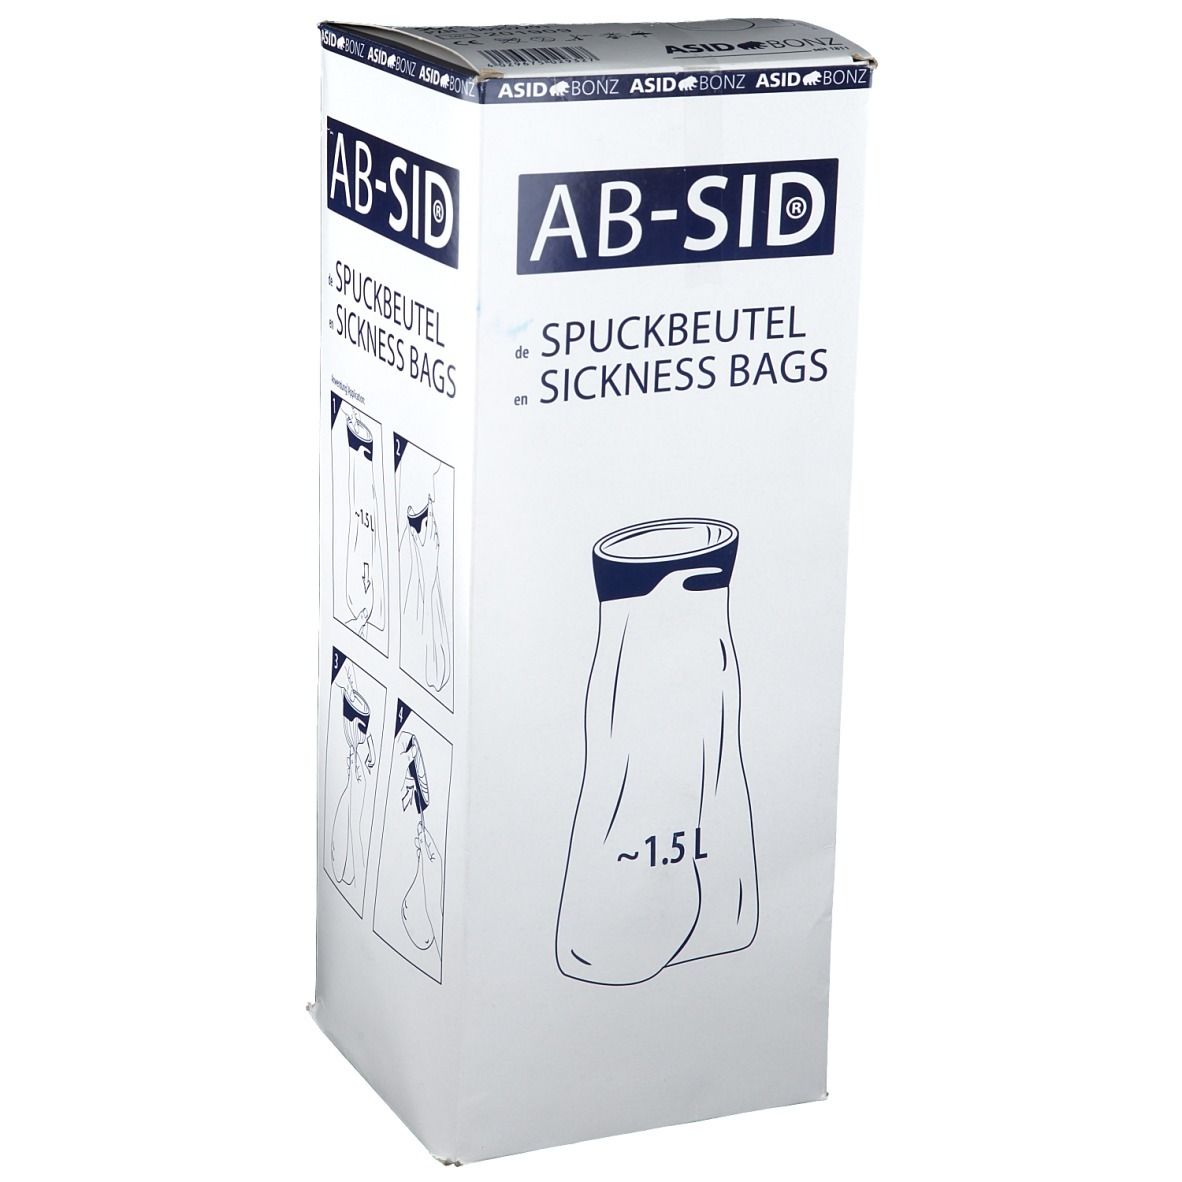 AB-SID® Spuckbeutel - Brechbeutel ➤ 50 Stk in einer VE